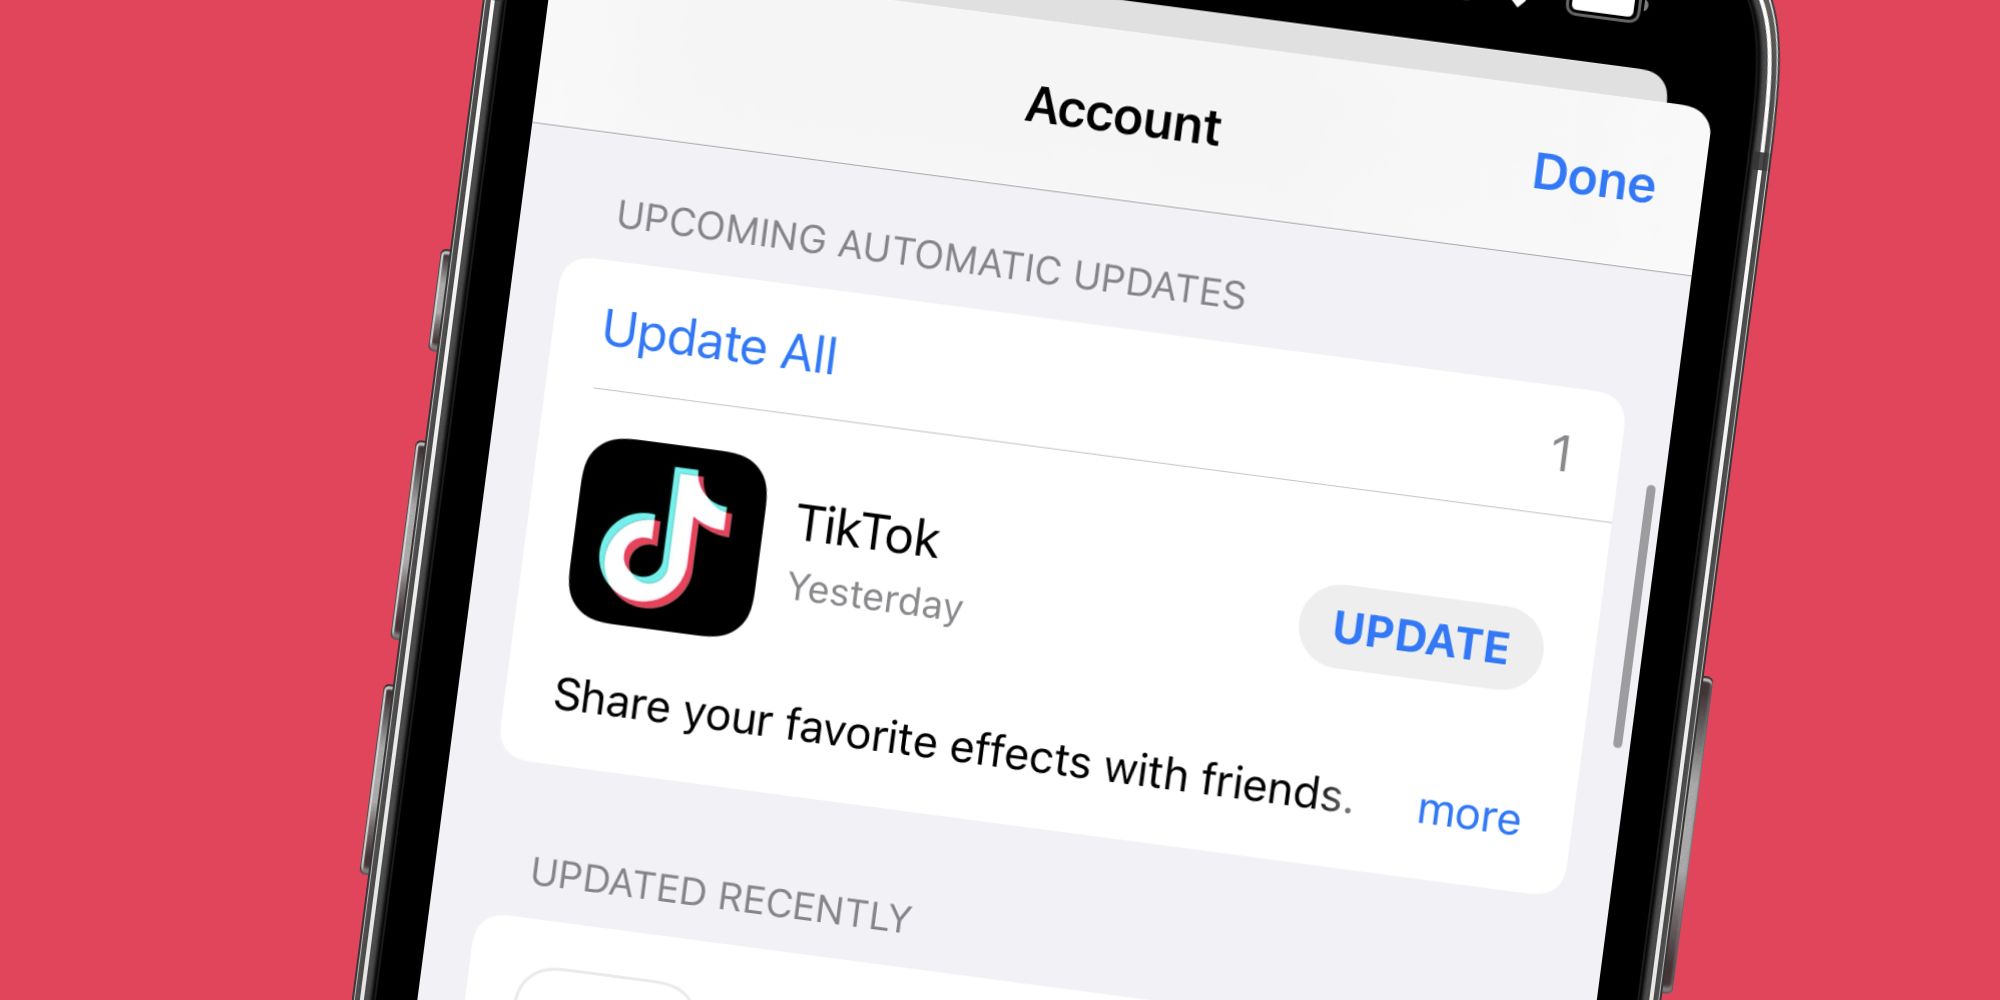 A TikTok update on an iPhone